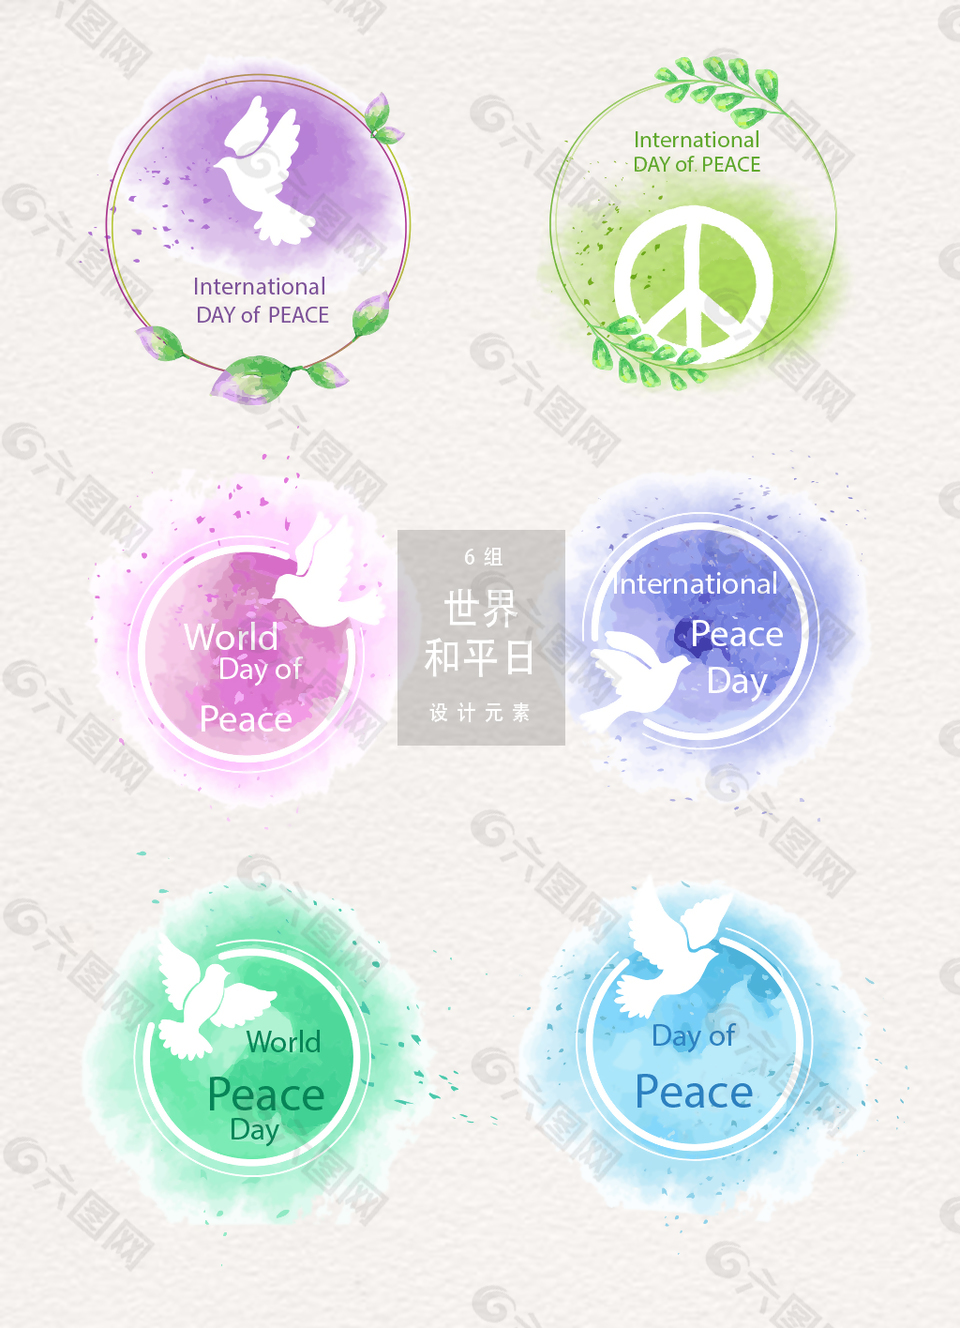 世界和平日图标素材